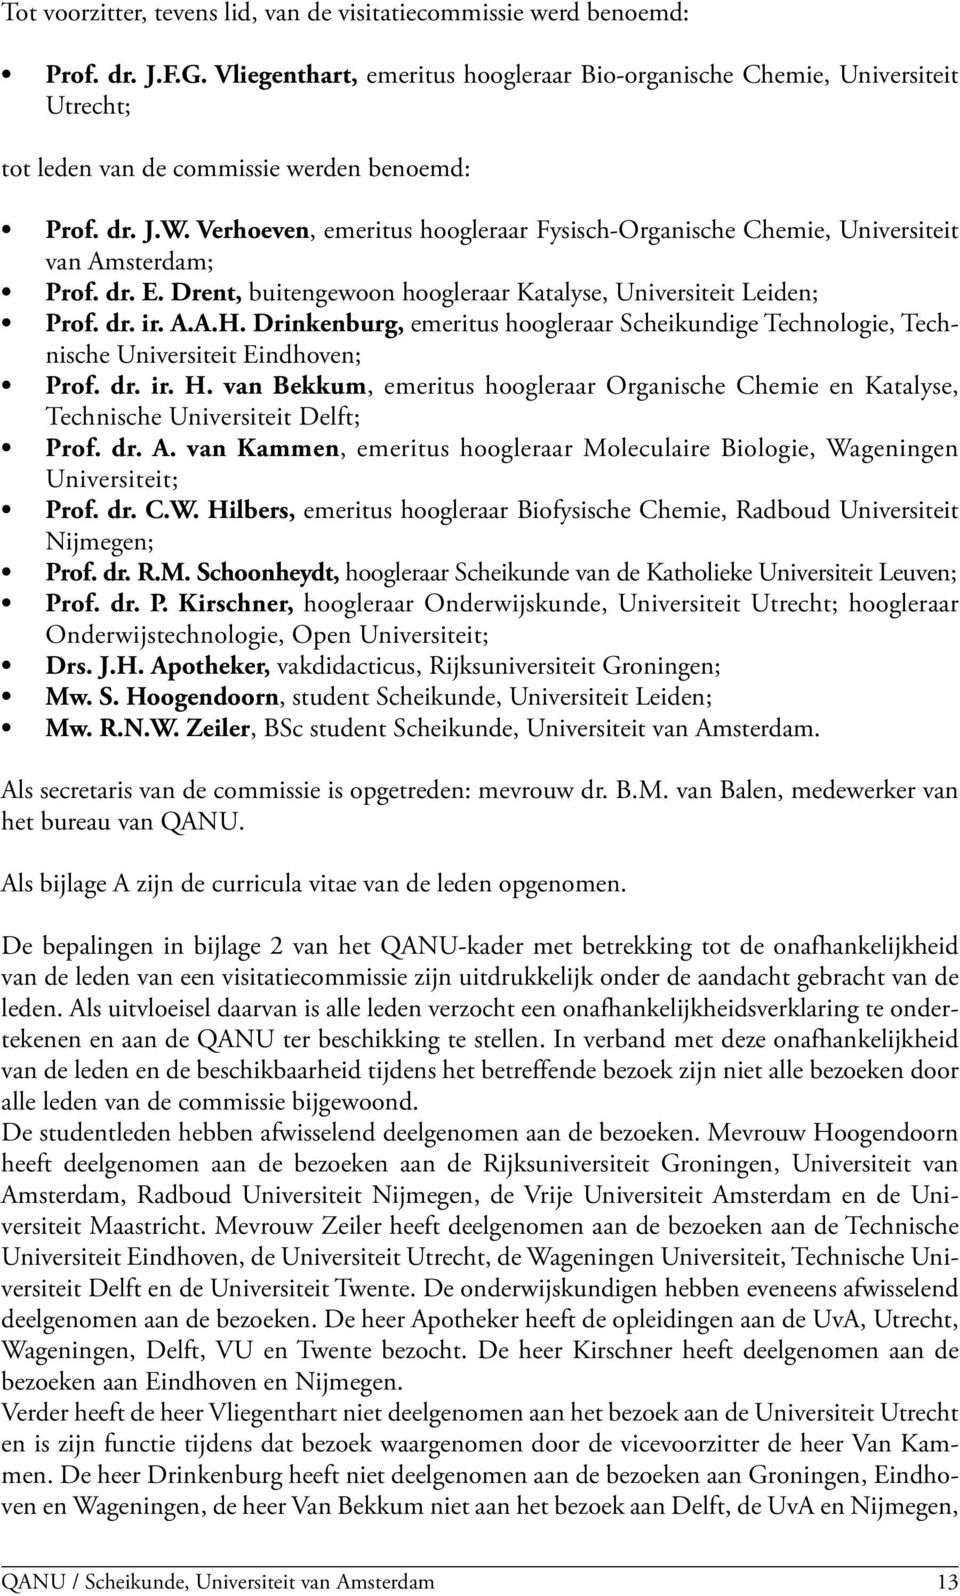 Verhoeven, emeritus hoogleraar Fysisch-Organische Chemie, Universiteit van Amsterdam; Prof. dr. E. Drent, buitengewoon hoogleraar Katalyse, Universiteit Leiden; Prof. dr. ir. A.A.H.